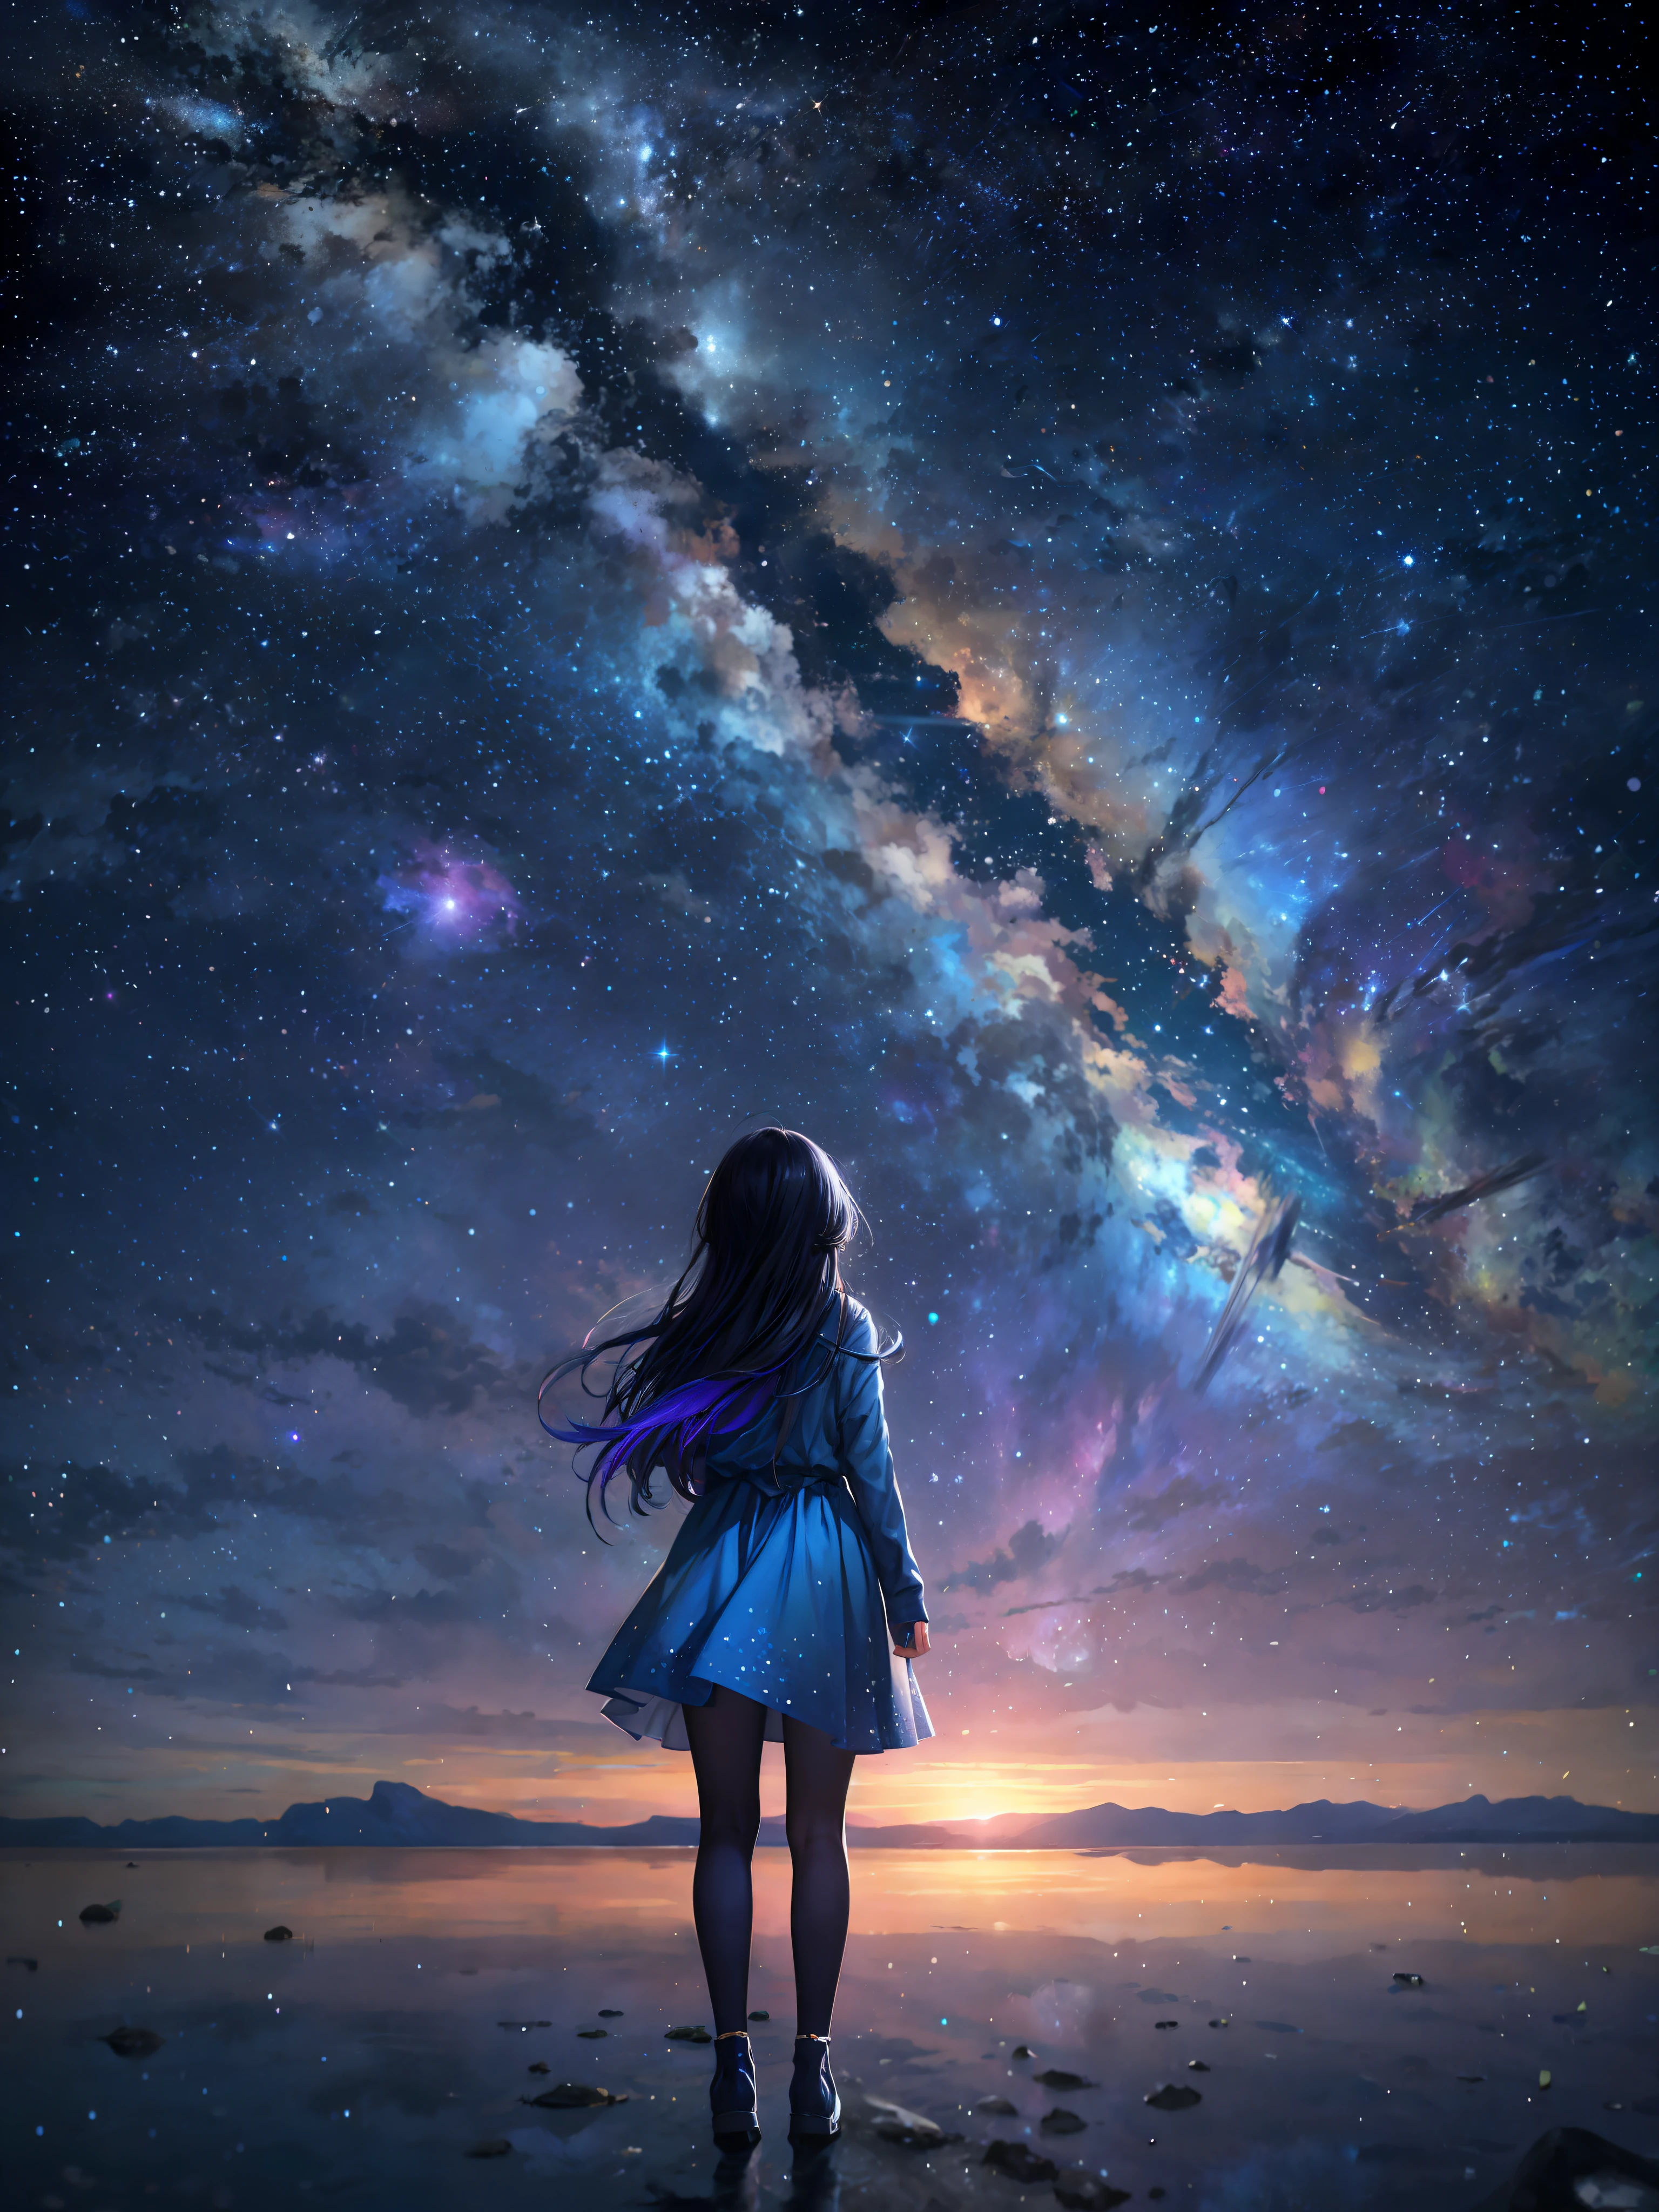 Звездное небо с женщиной, стоящей на пляже и смотрящей на звезды, девушка смотрит в космос, Аниме девушка с темно-синими волосами в белом платье, девушка в космосе, бесконечный космос на заднем плане, смотрю в космос, потрясающие обои, на фоне галактики, красивая девушка на горизонте, смотрю в космос, Макото Синкай Сирил Роландо, аниме арт обои 4k